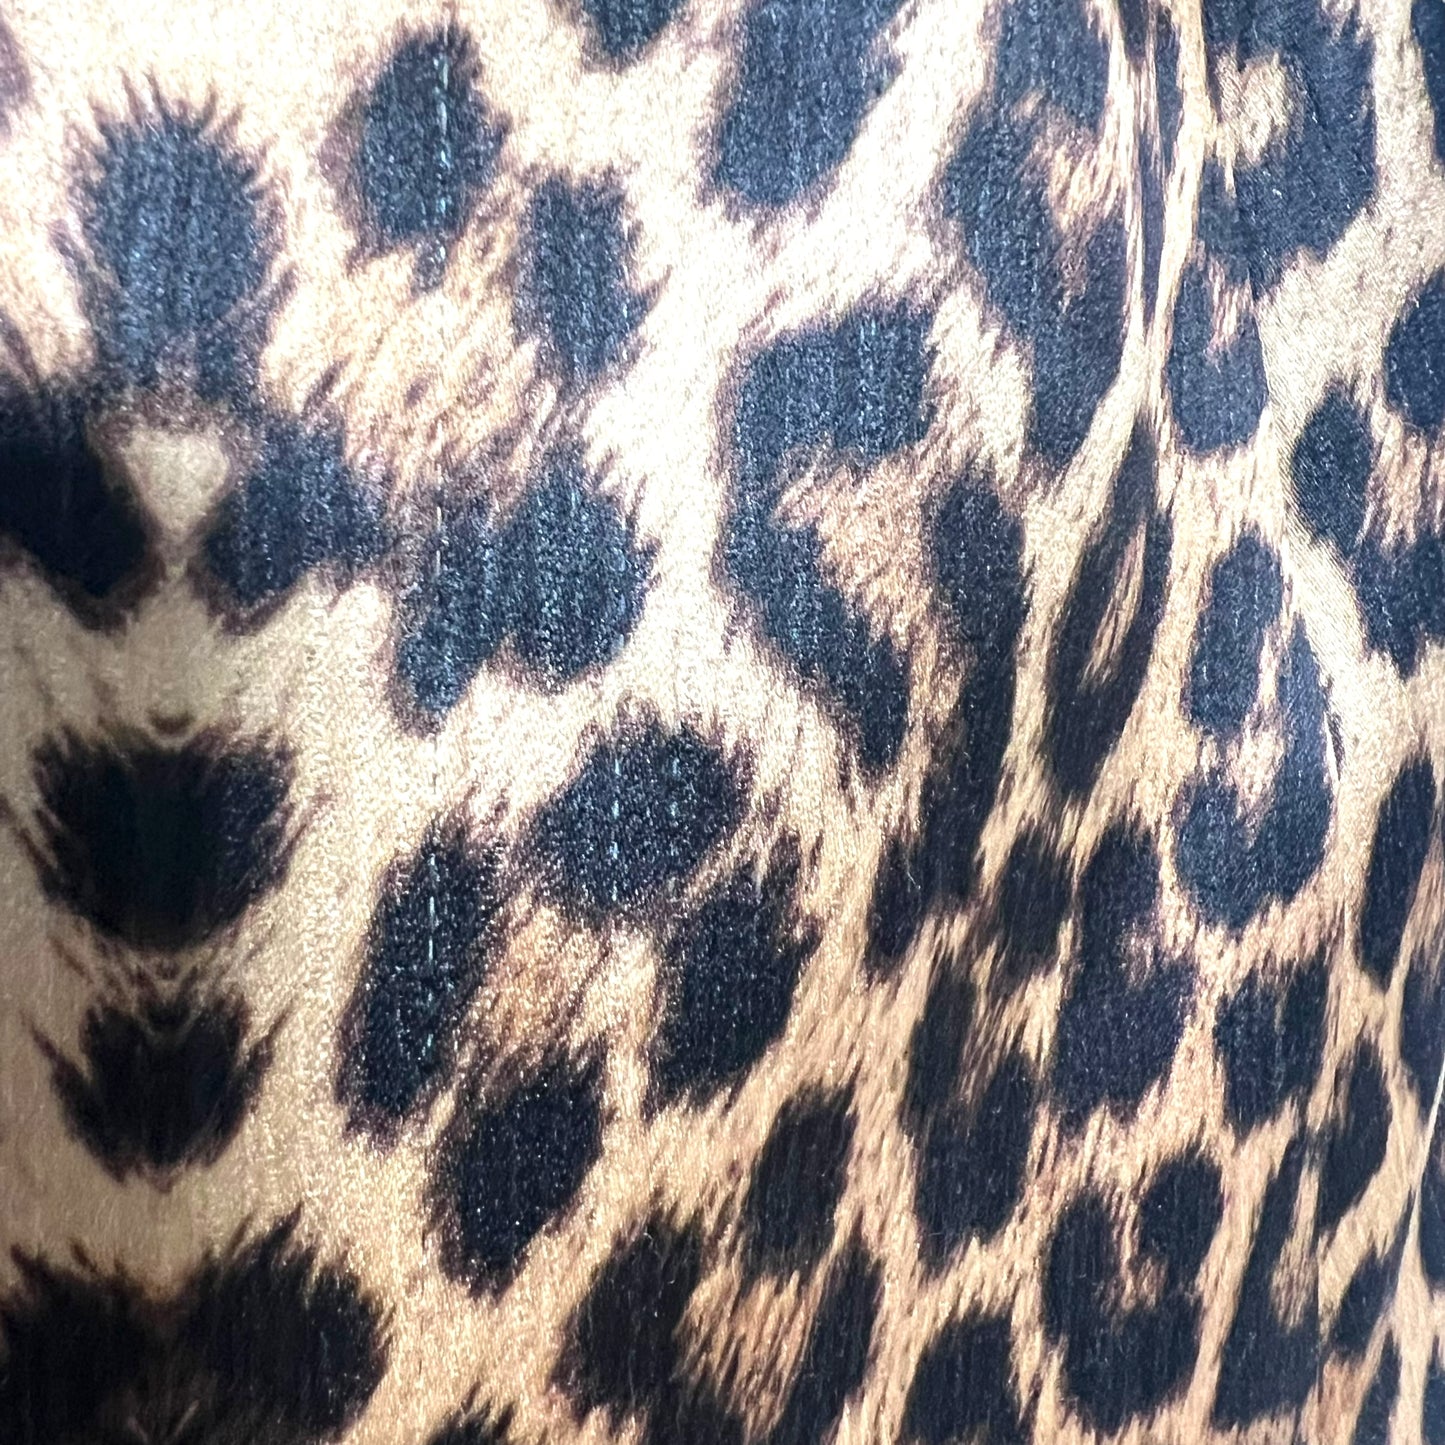 Yves Saint Laurent 90’s leopard coat